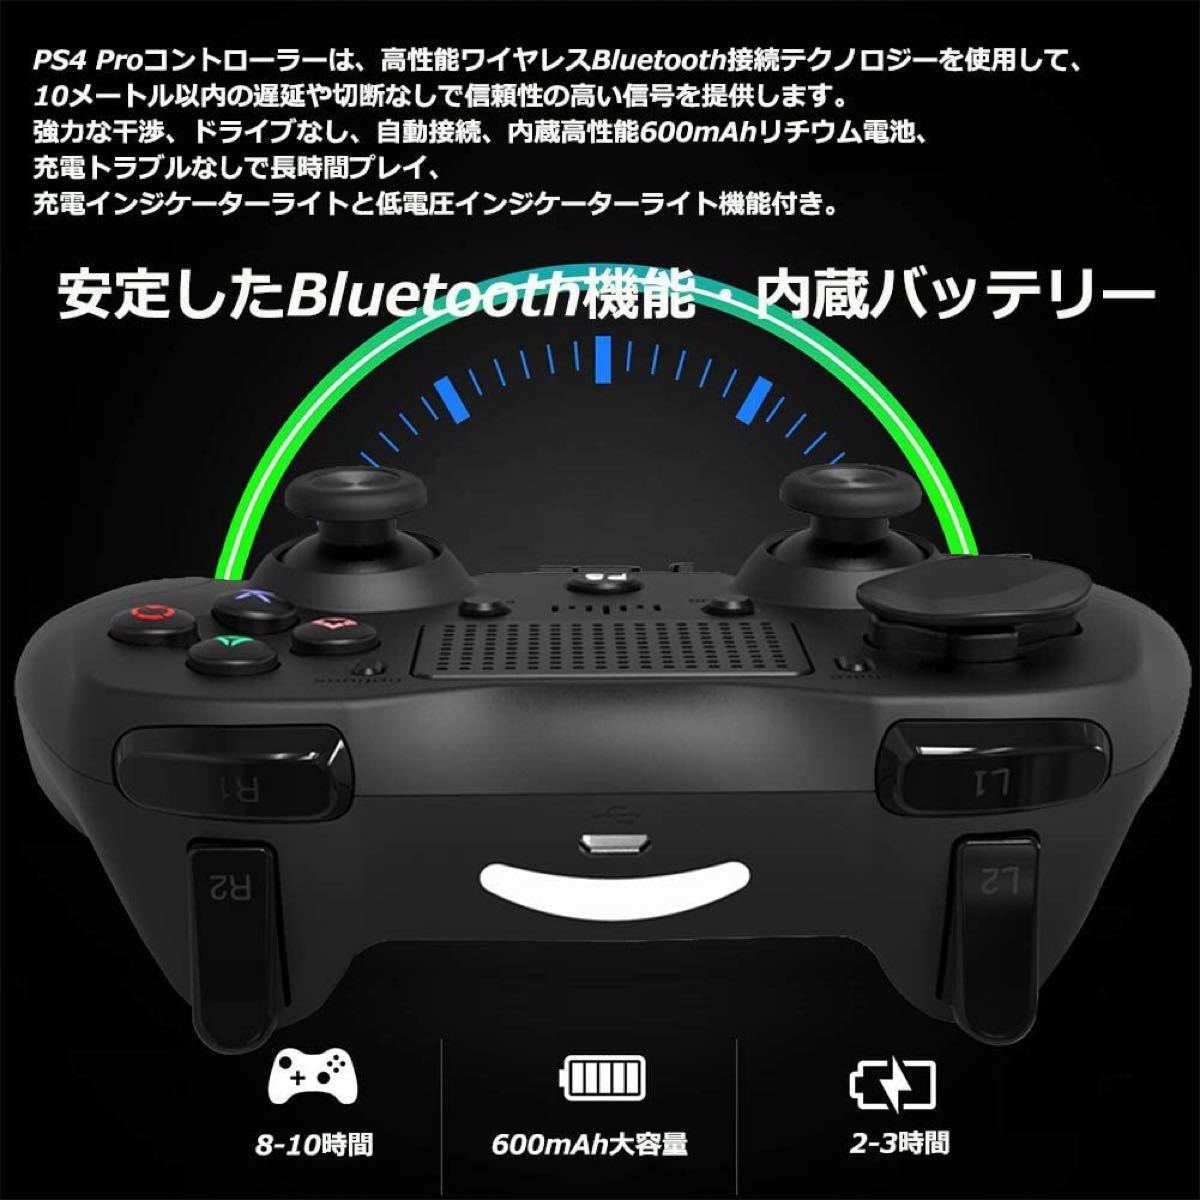 PS4コントローラー 無線 Bluetooth接続 スゲームパッド 高耐久ボタン